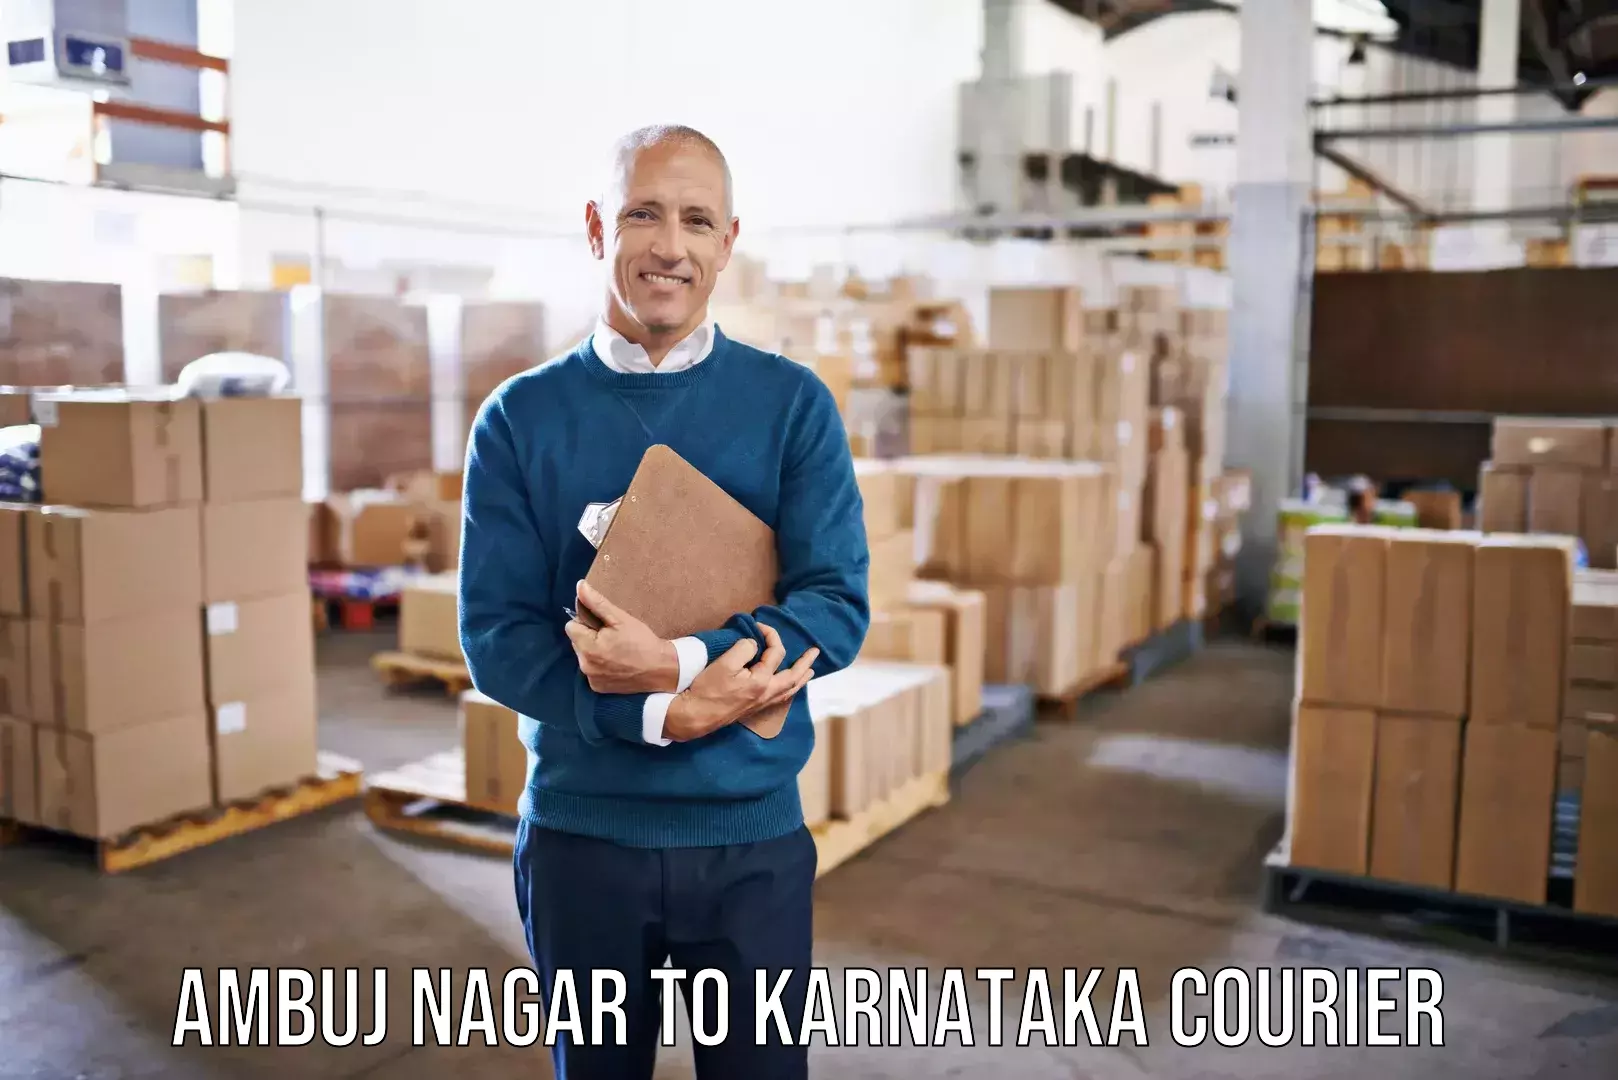 Trusted moving company Ambuj Nagar to Kundapura